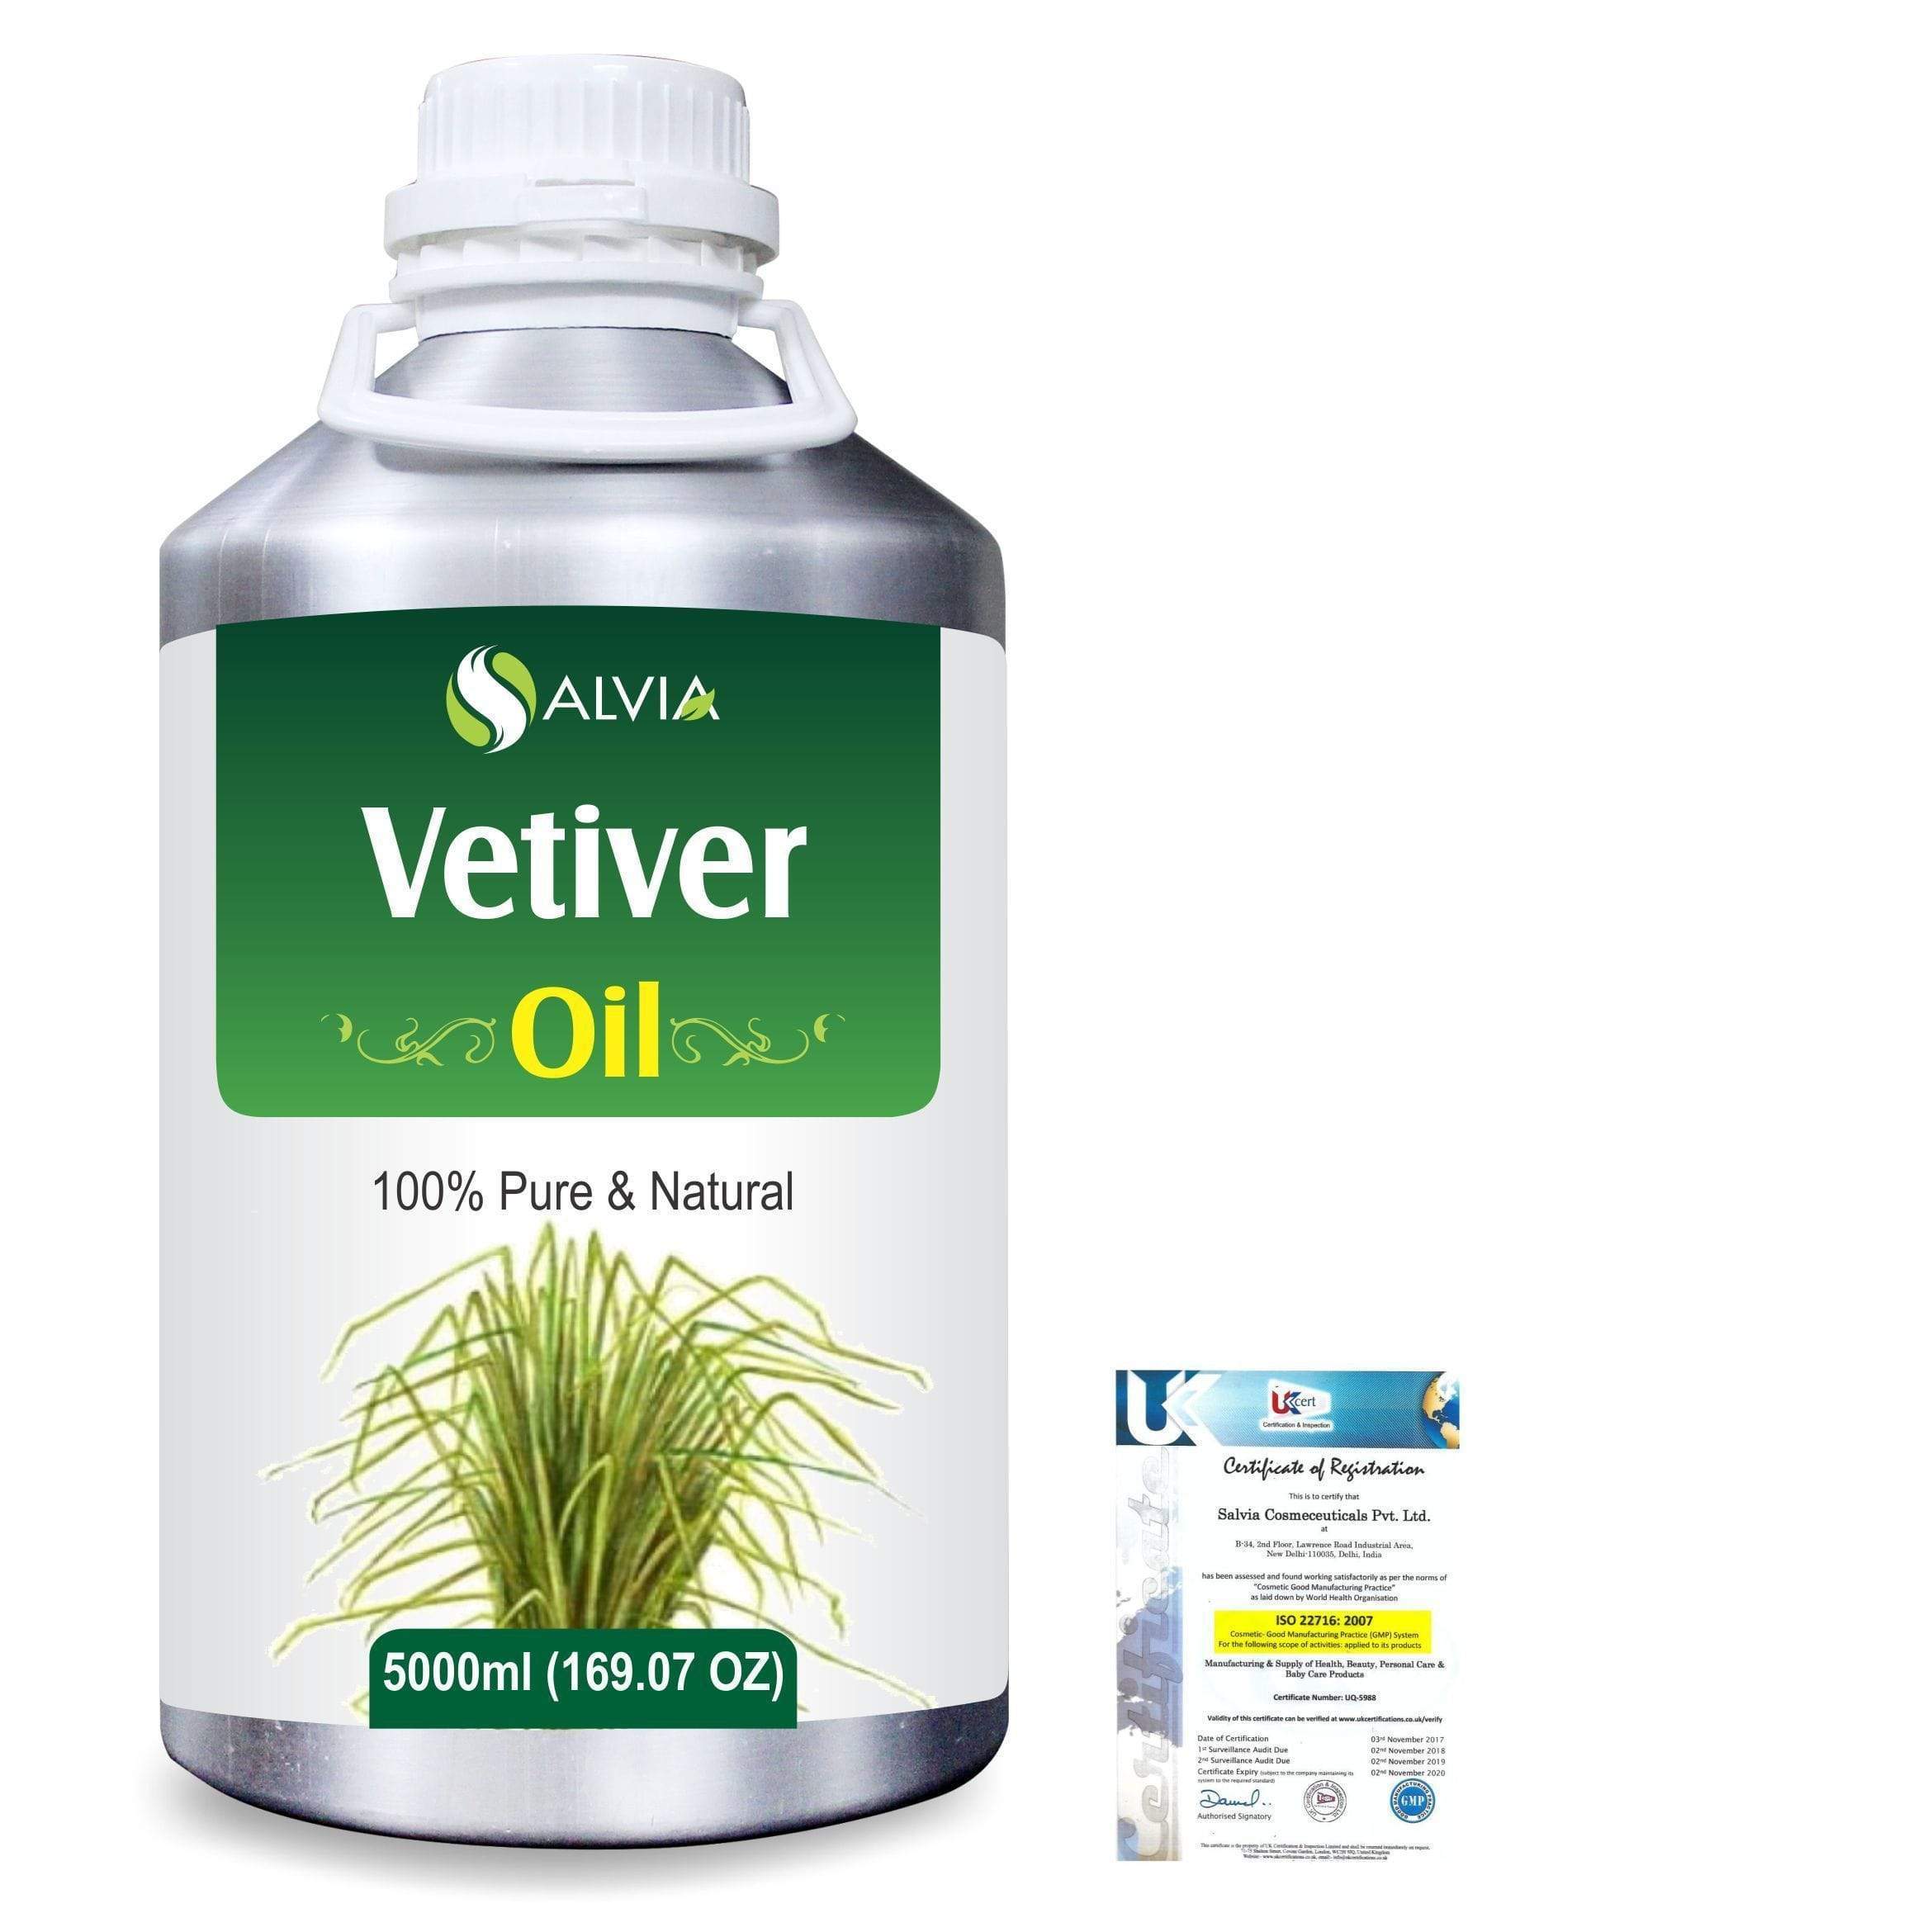  benefits of vetiver oil for skin